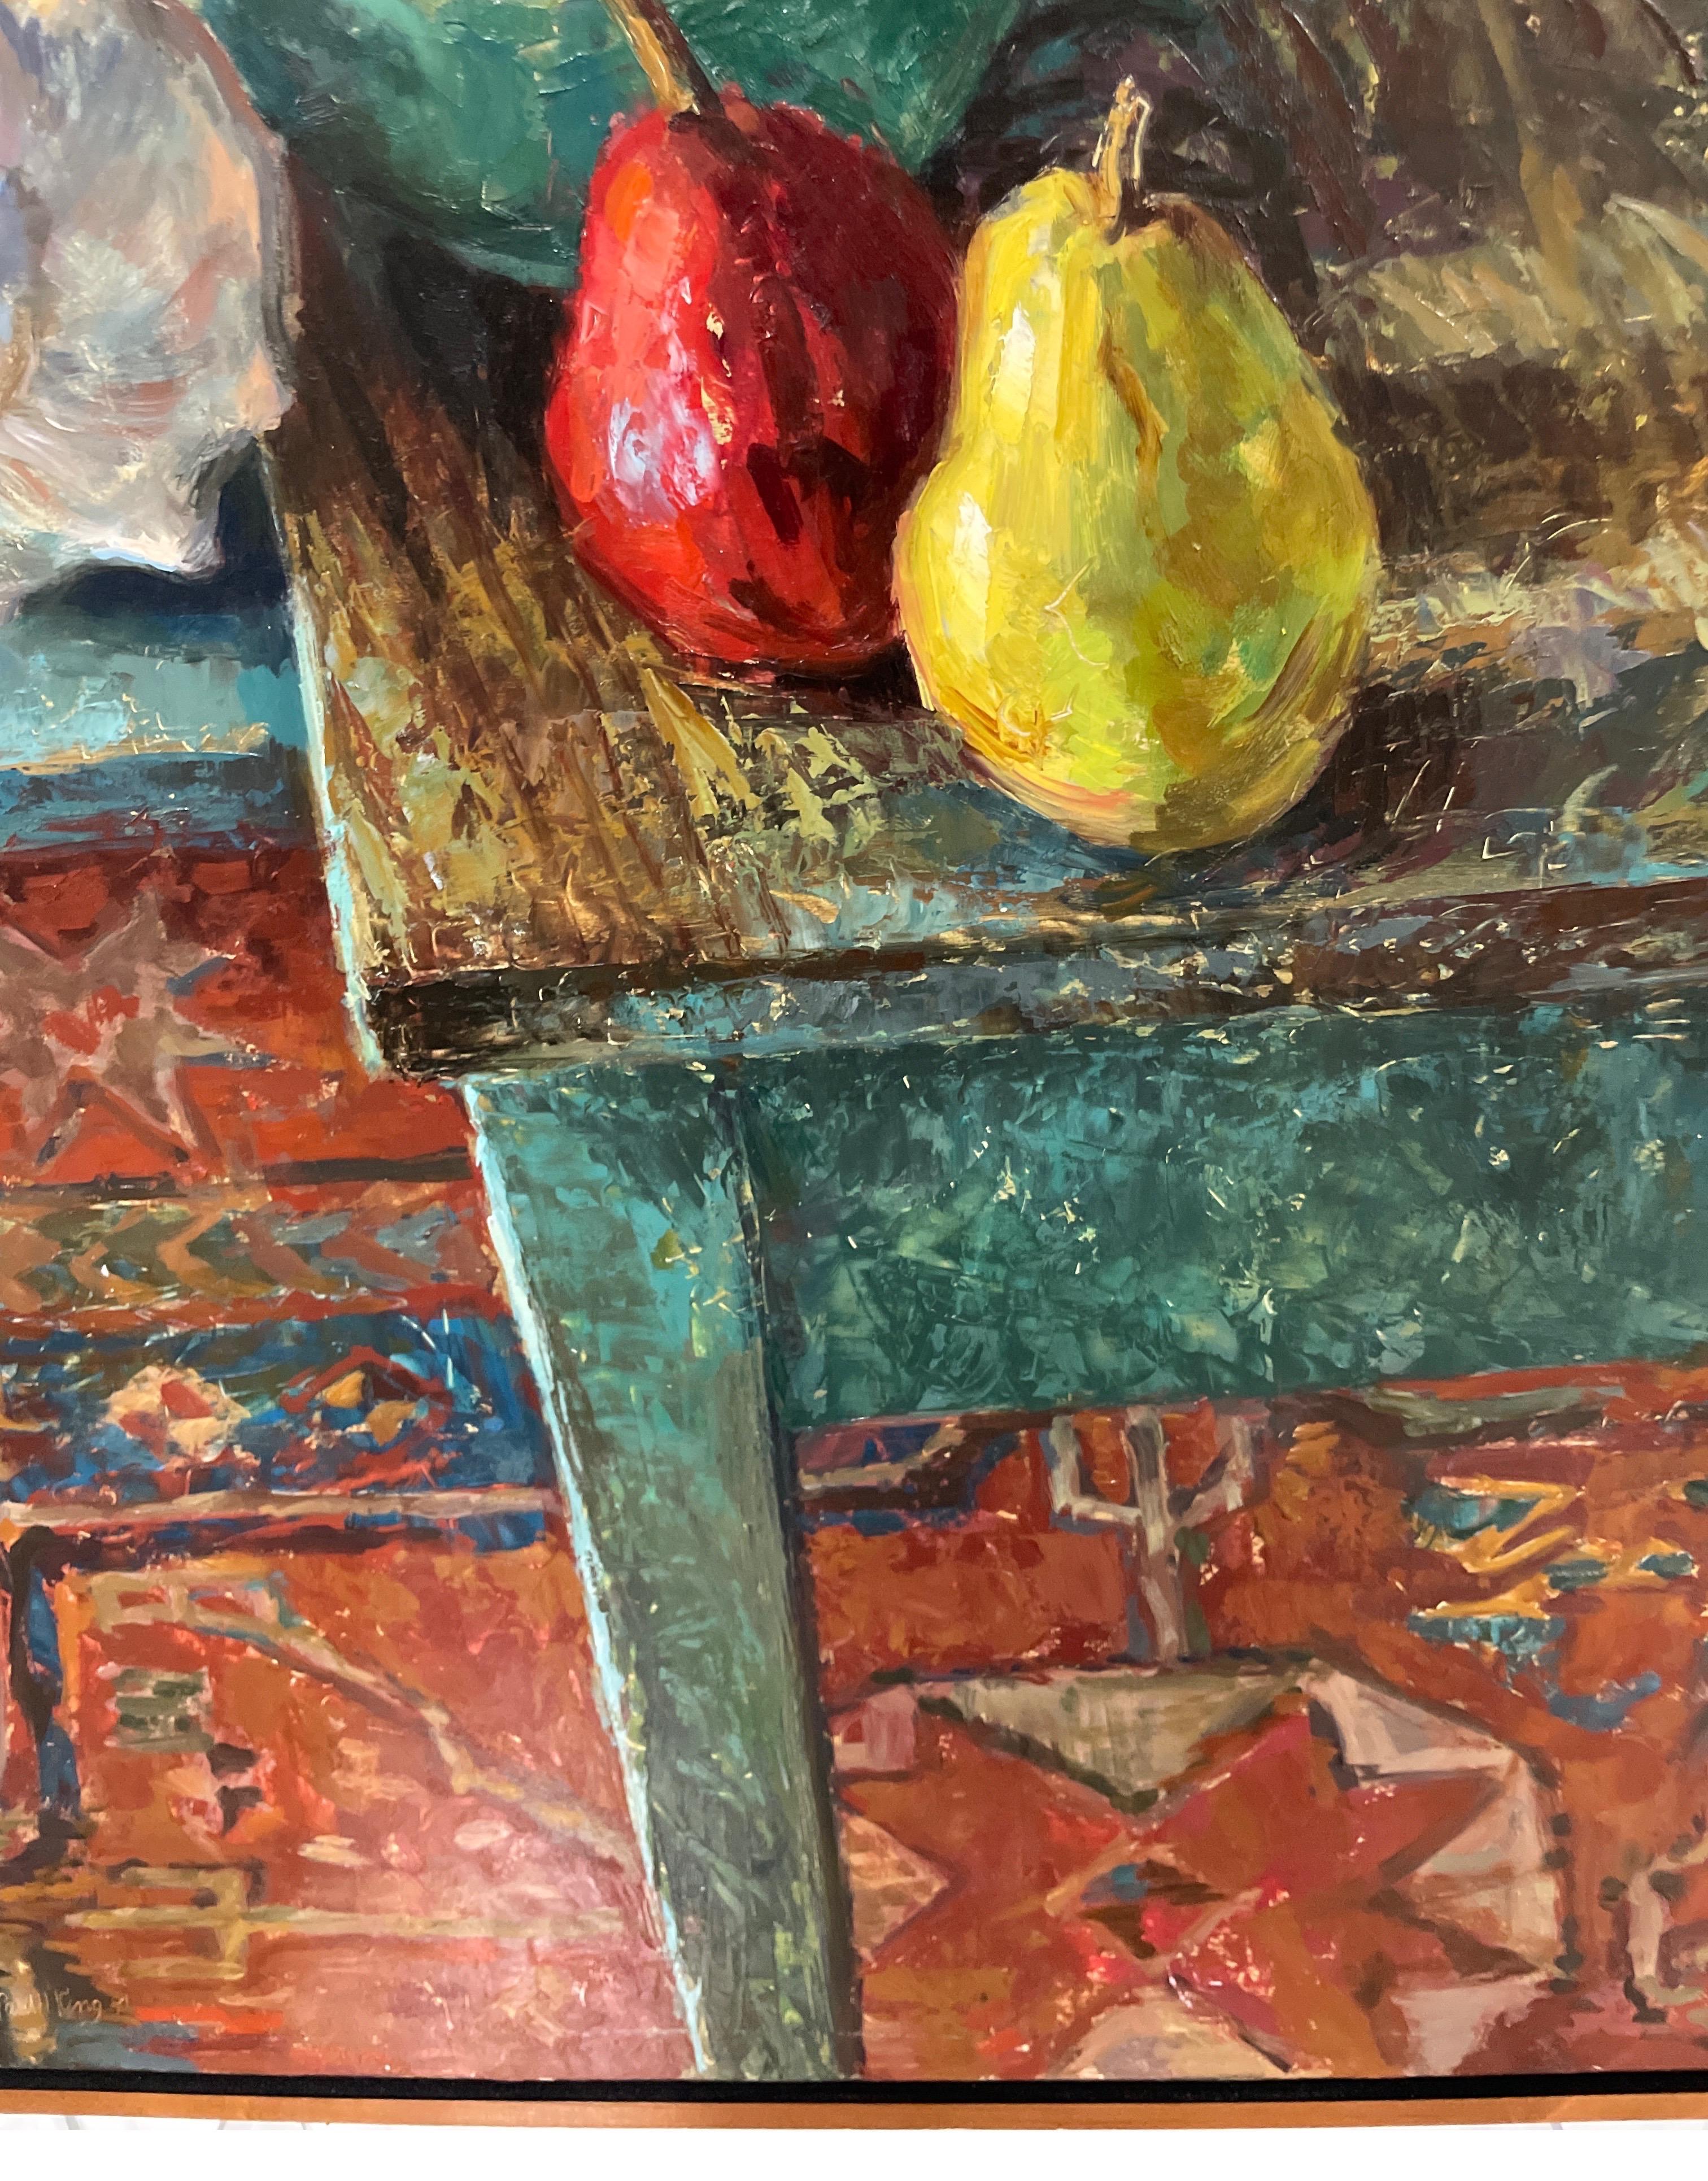 Merveilleuse nature morte contemporaine peinte par Paul King. Le tableau représente des fruits dans une coupe et sur une table de campagne avec d'autres pièces. Le sol est recouvert d'un tapis oriental. Très beaux détails.